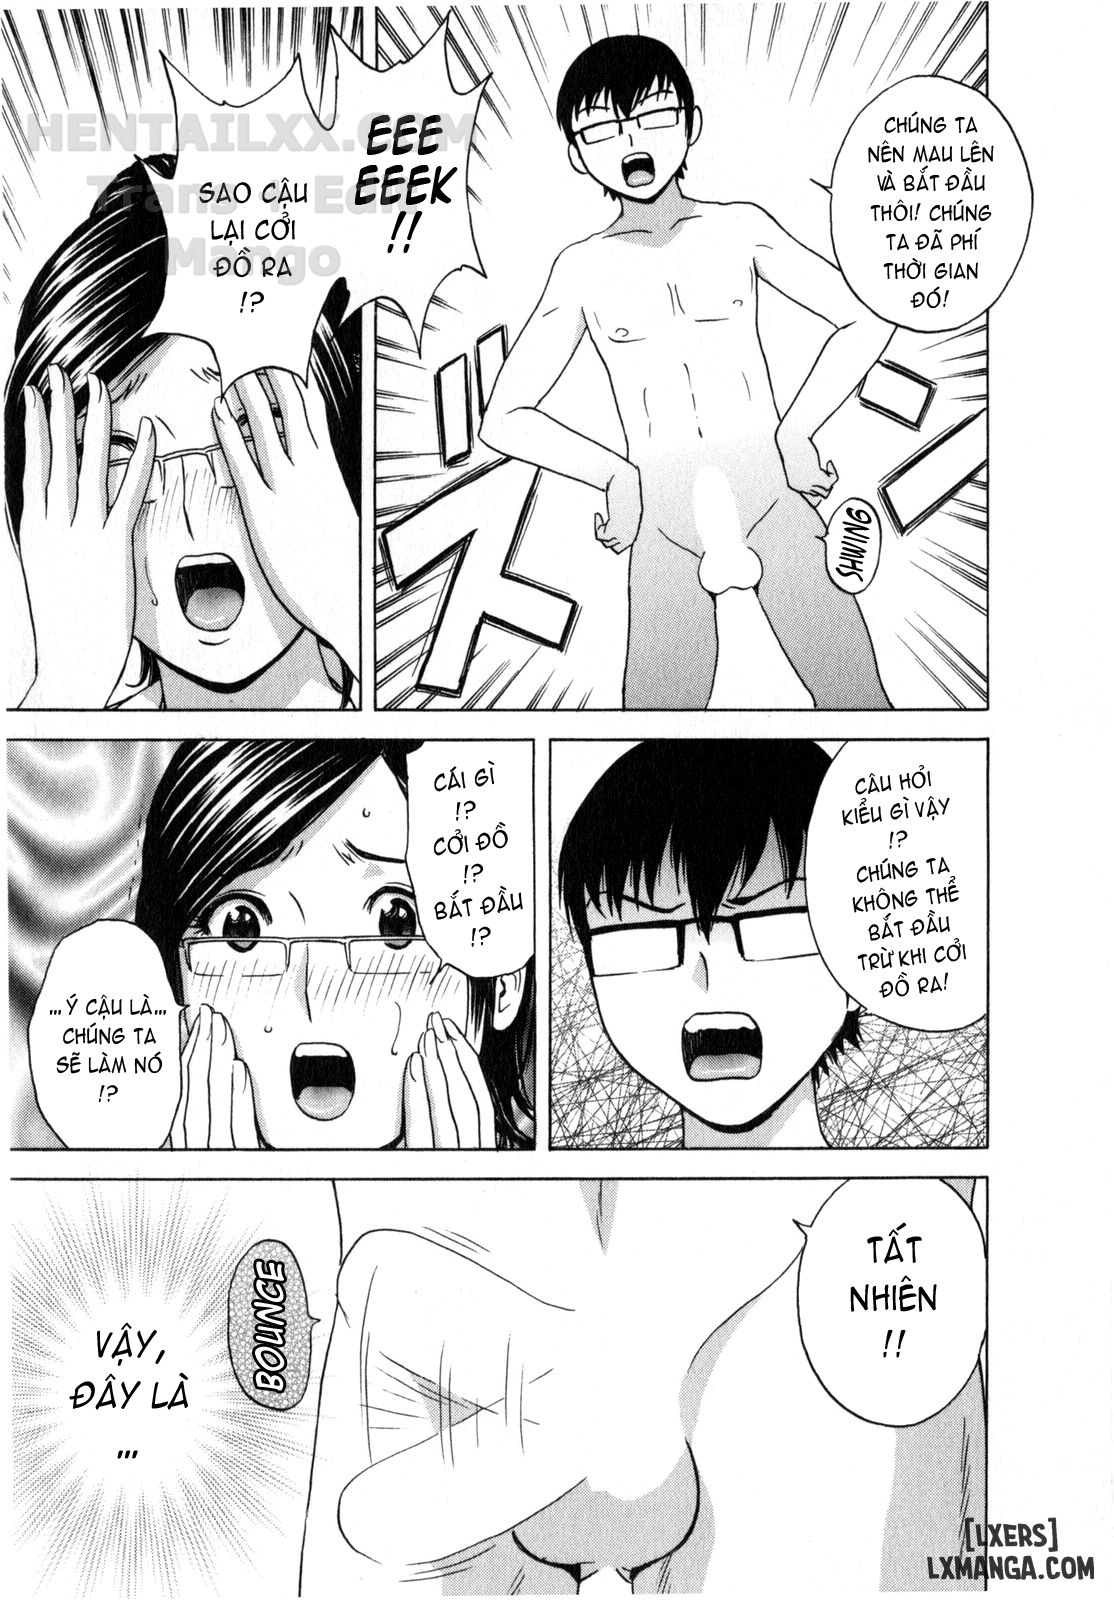 Life with Married Women Just Like a Manga Chương 11 Trang 20